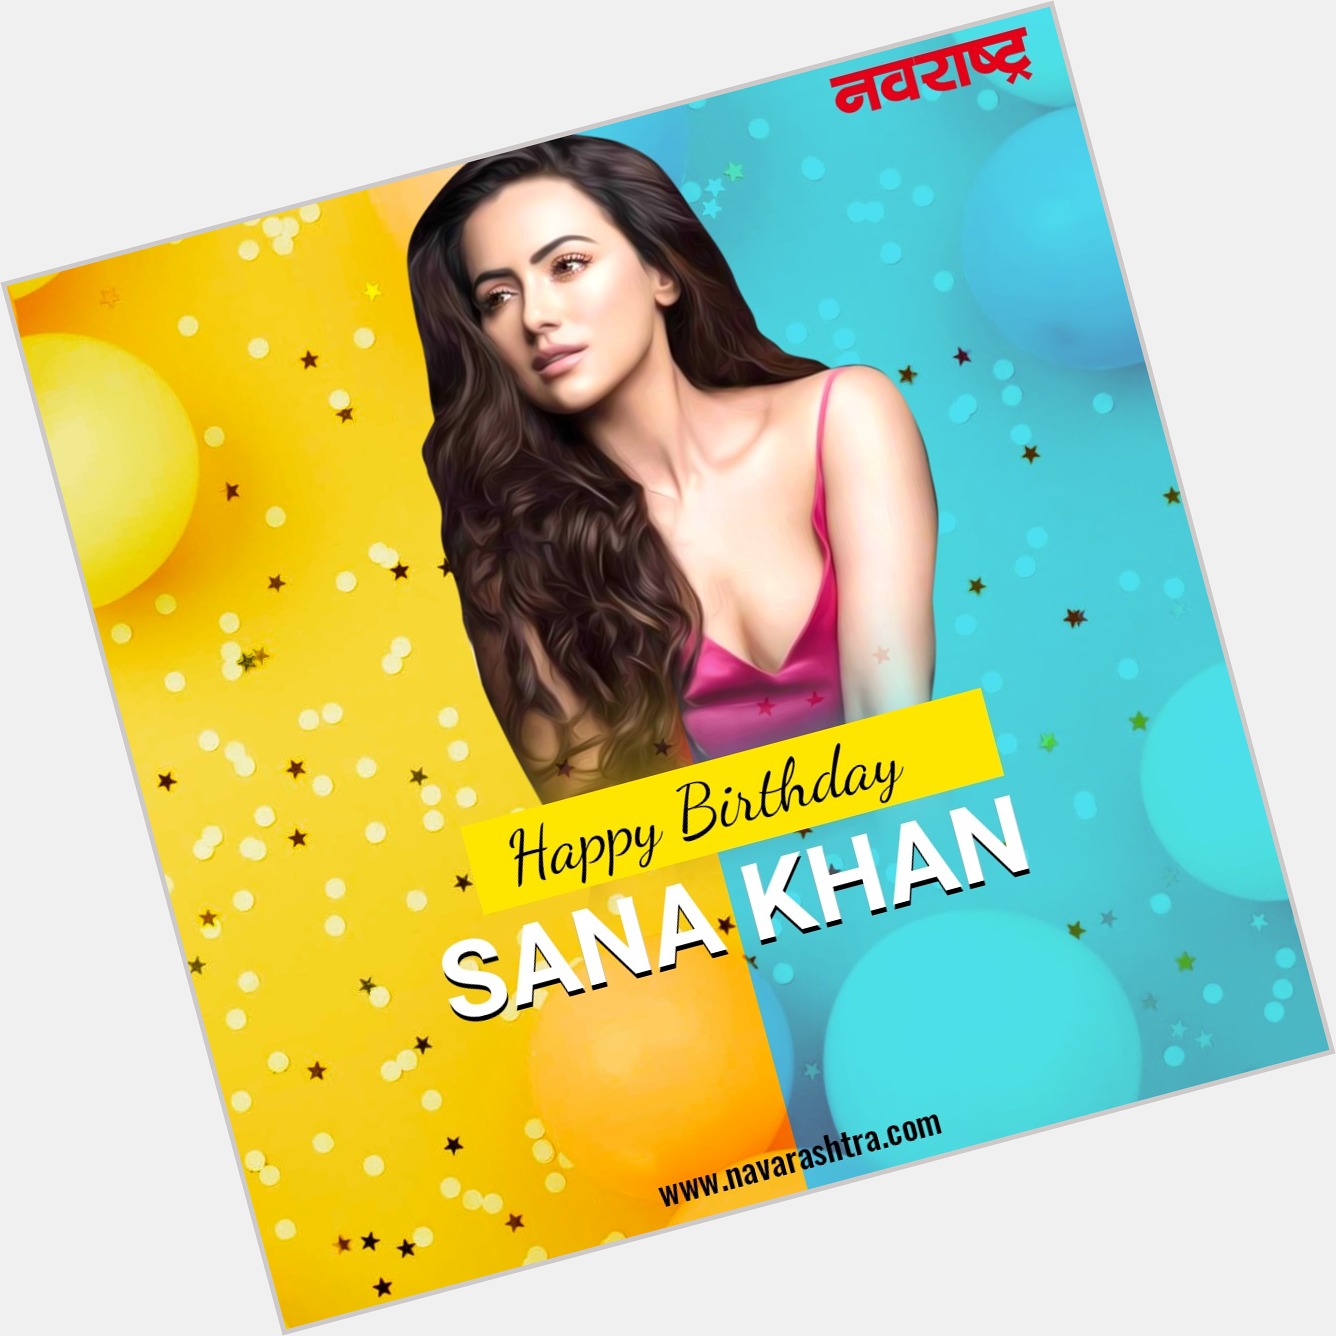  wishes Sana Khan Happy Birthday   